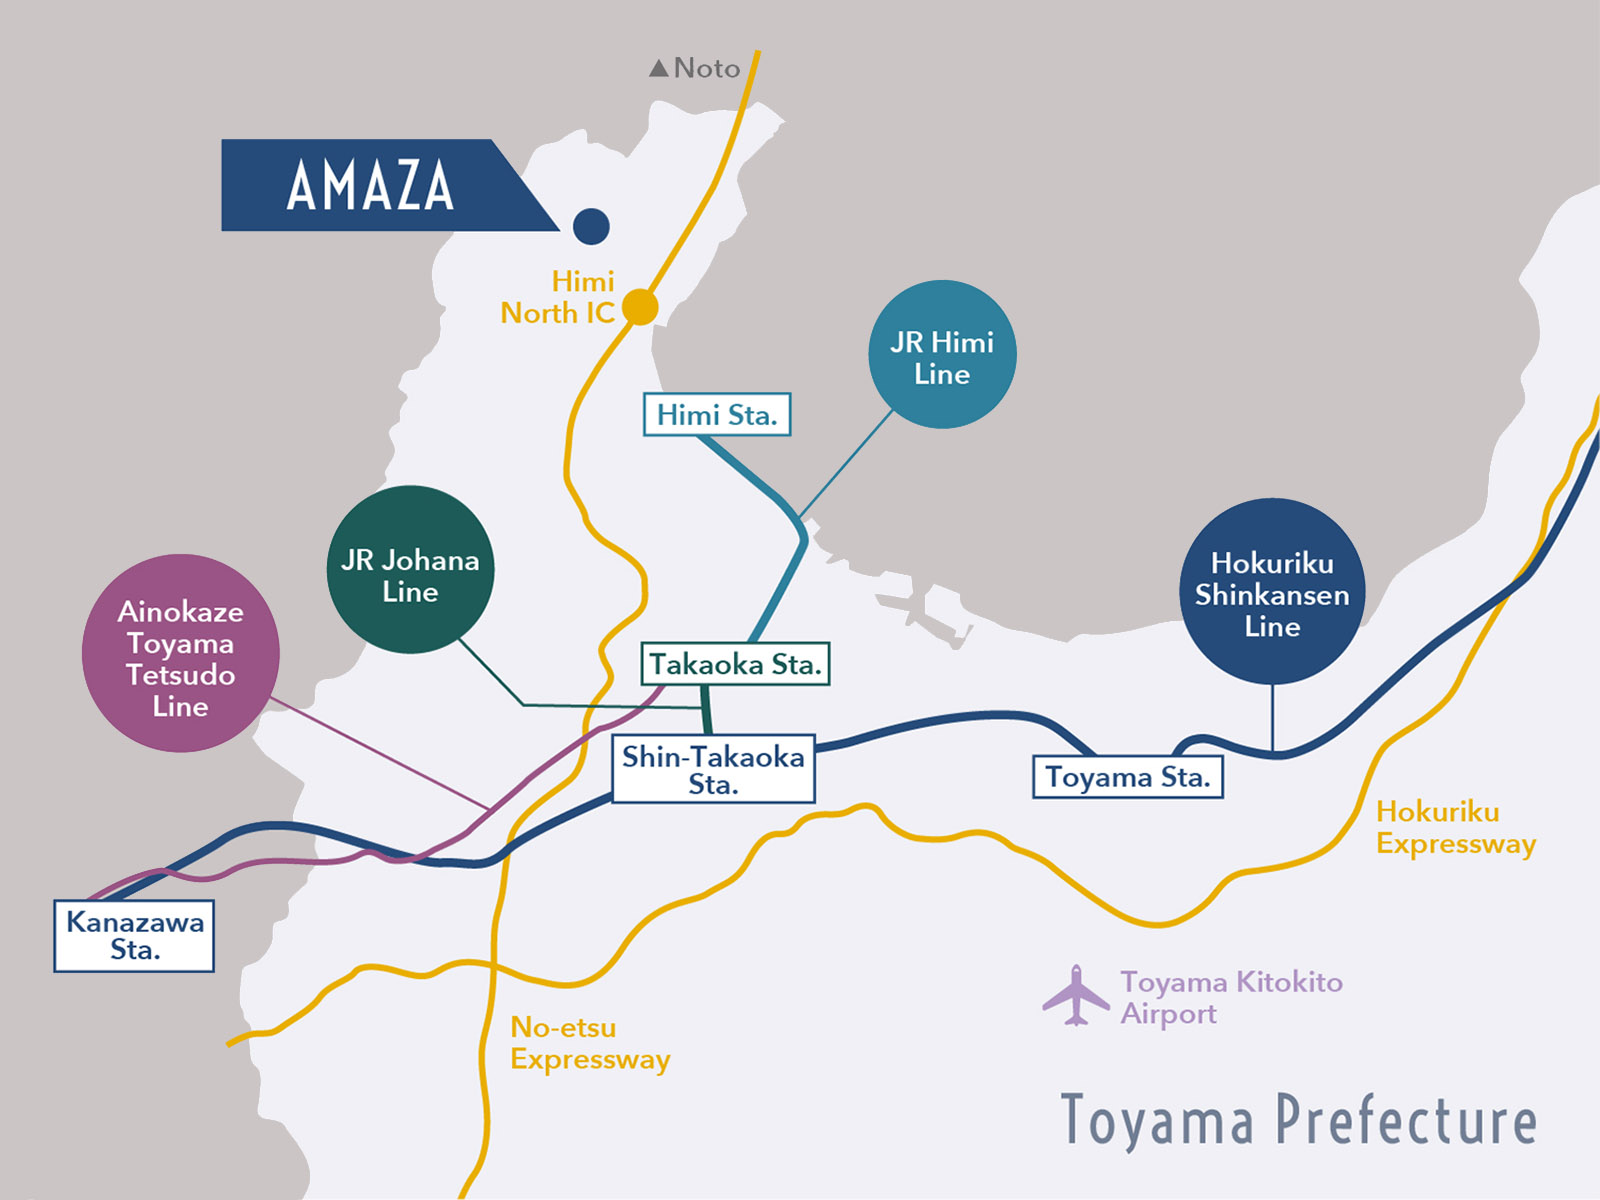 AMAZA Map